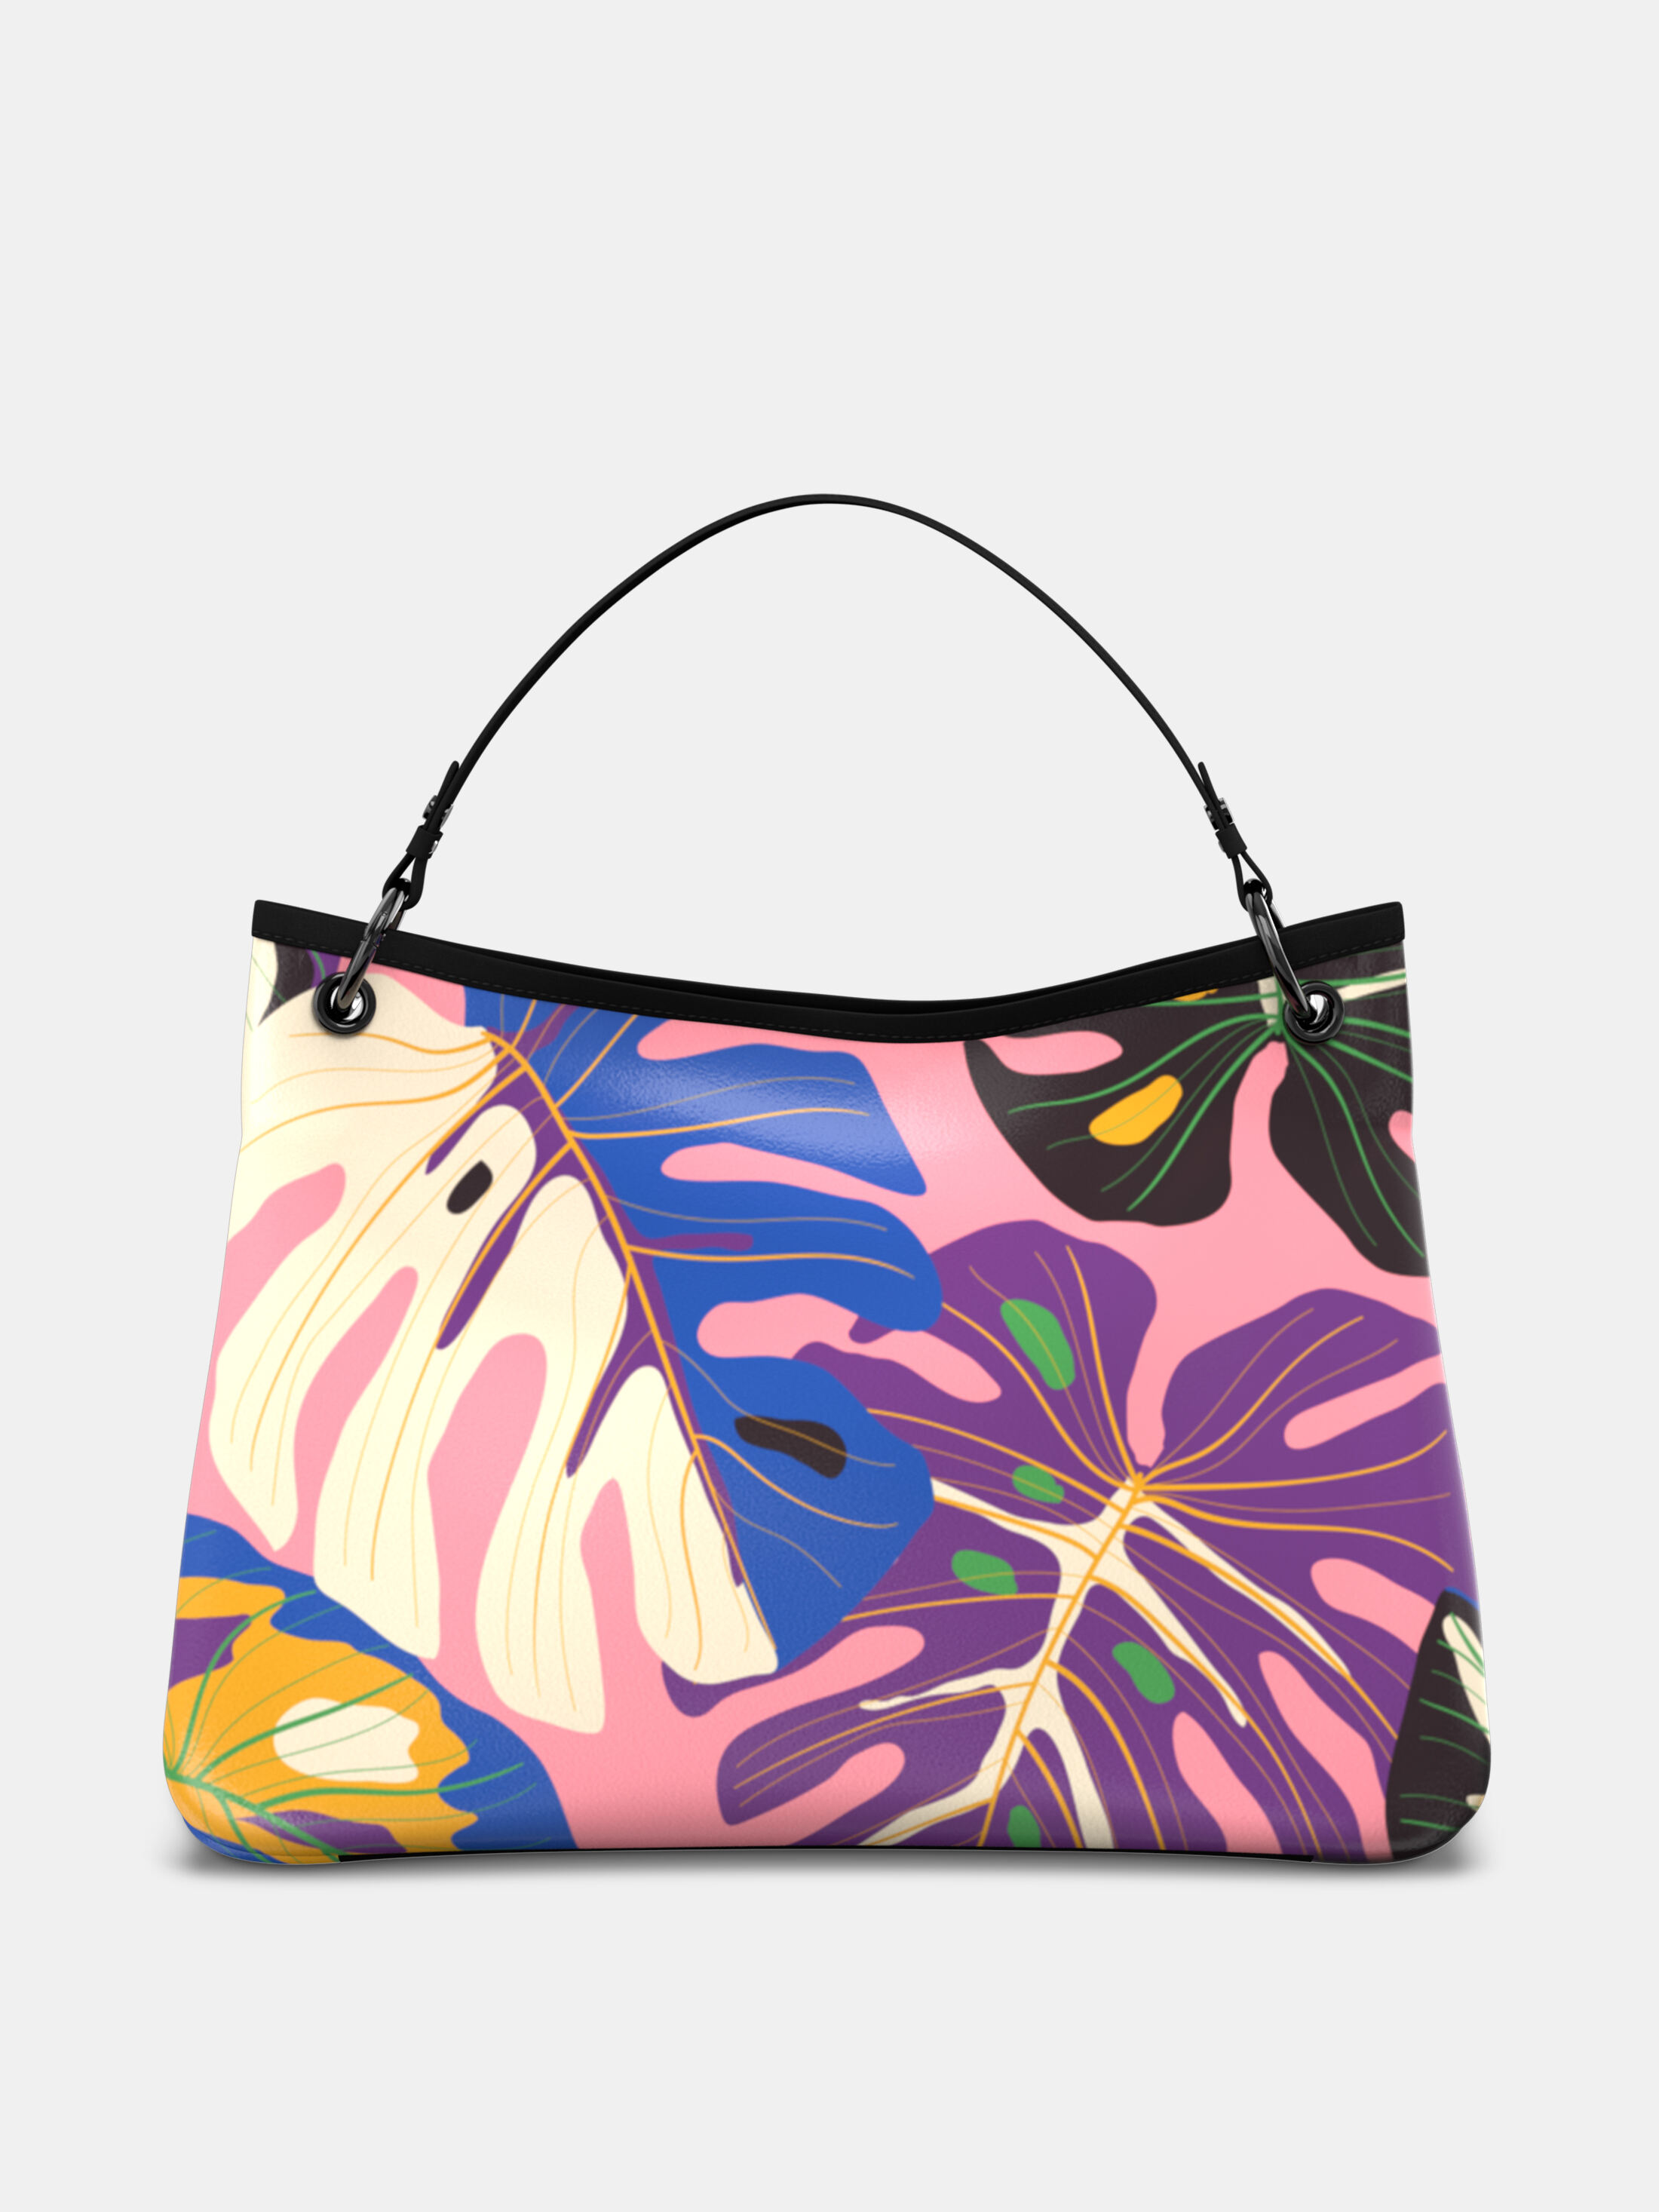 Design Your Own Handbag | Craftsy